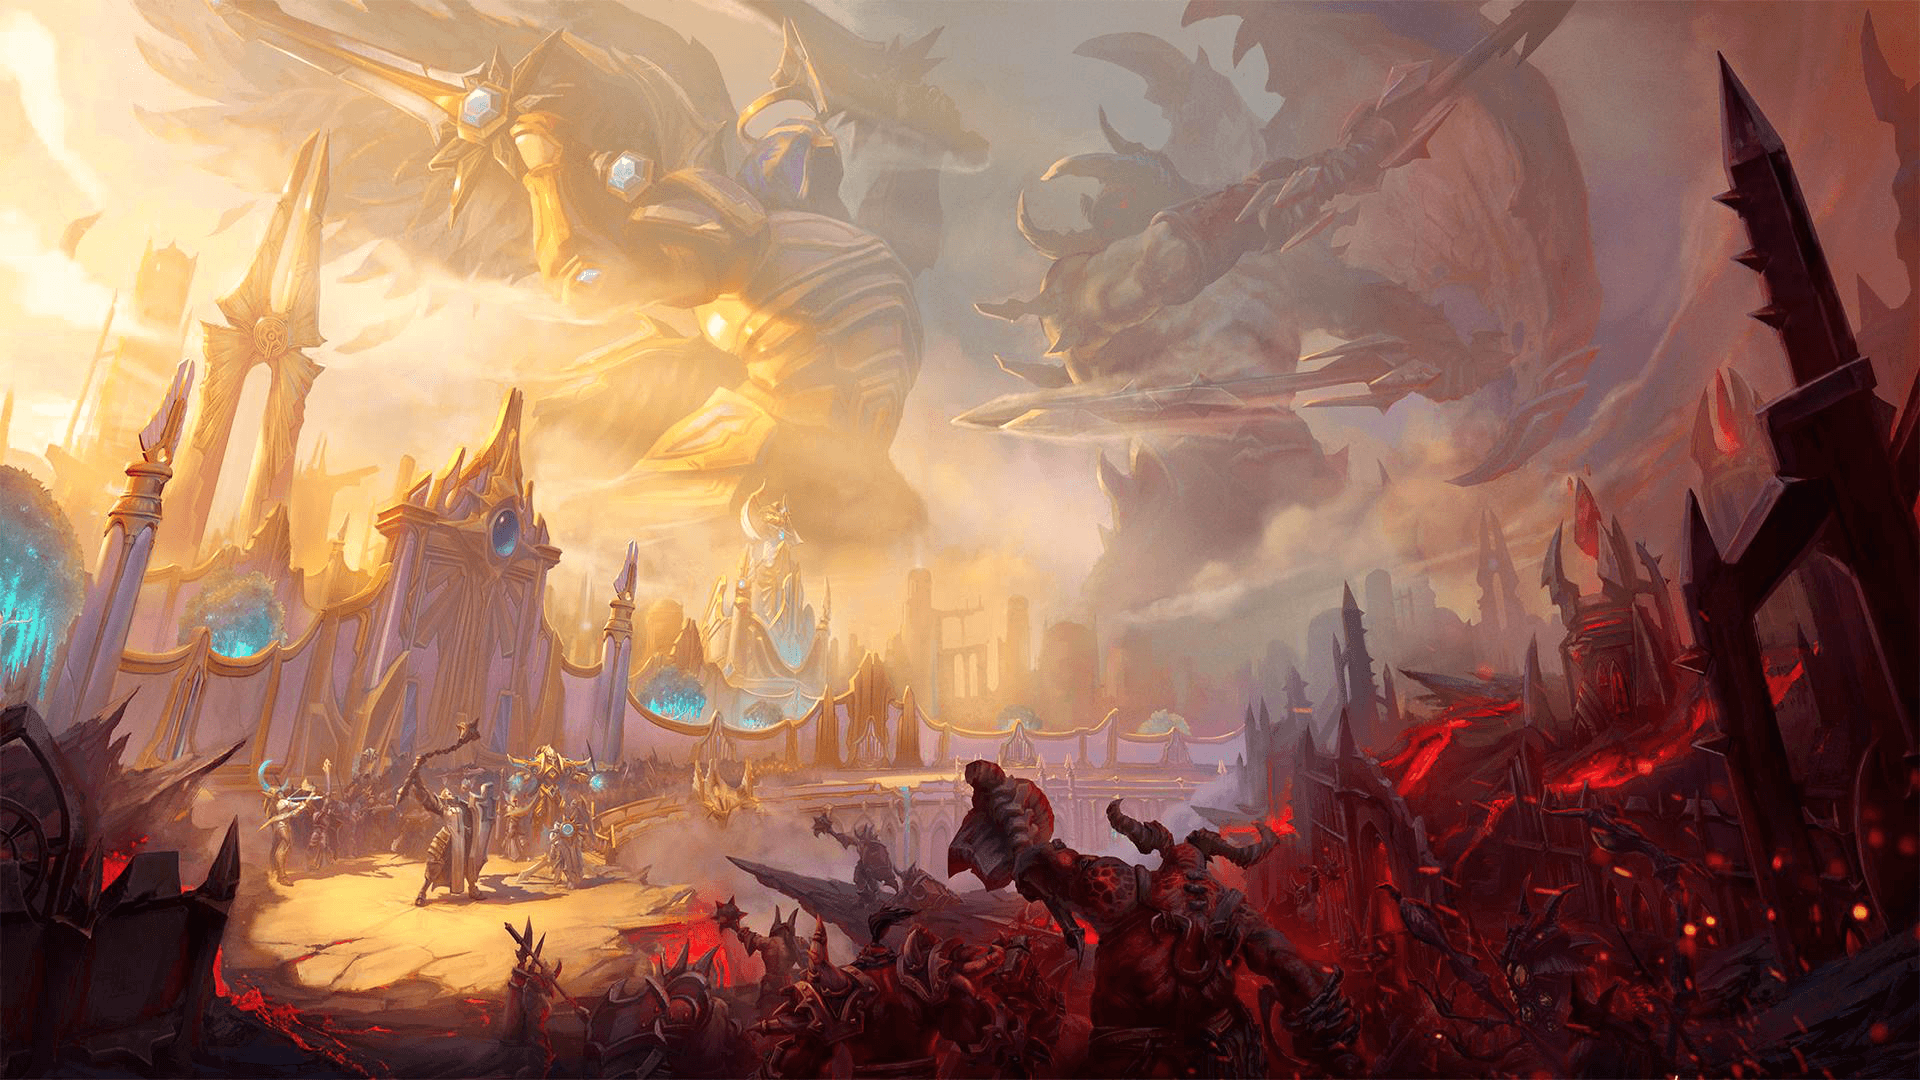 Battlefield of Eternity, #Blizzard Entertainment, #Diablo III